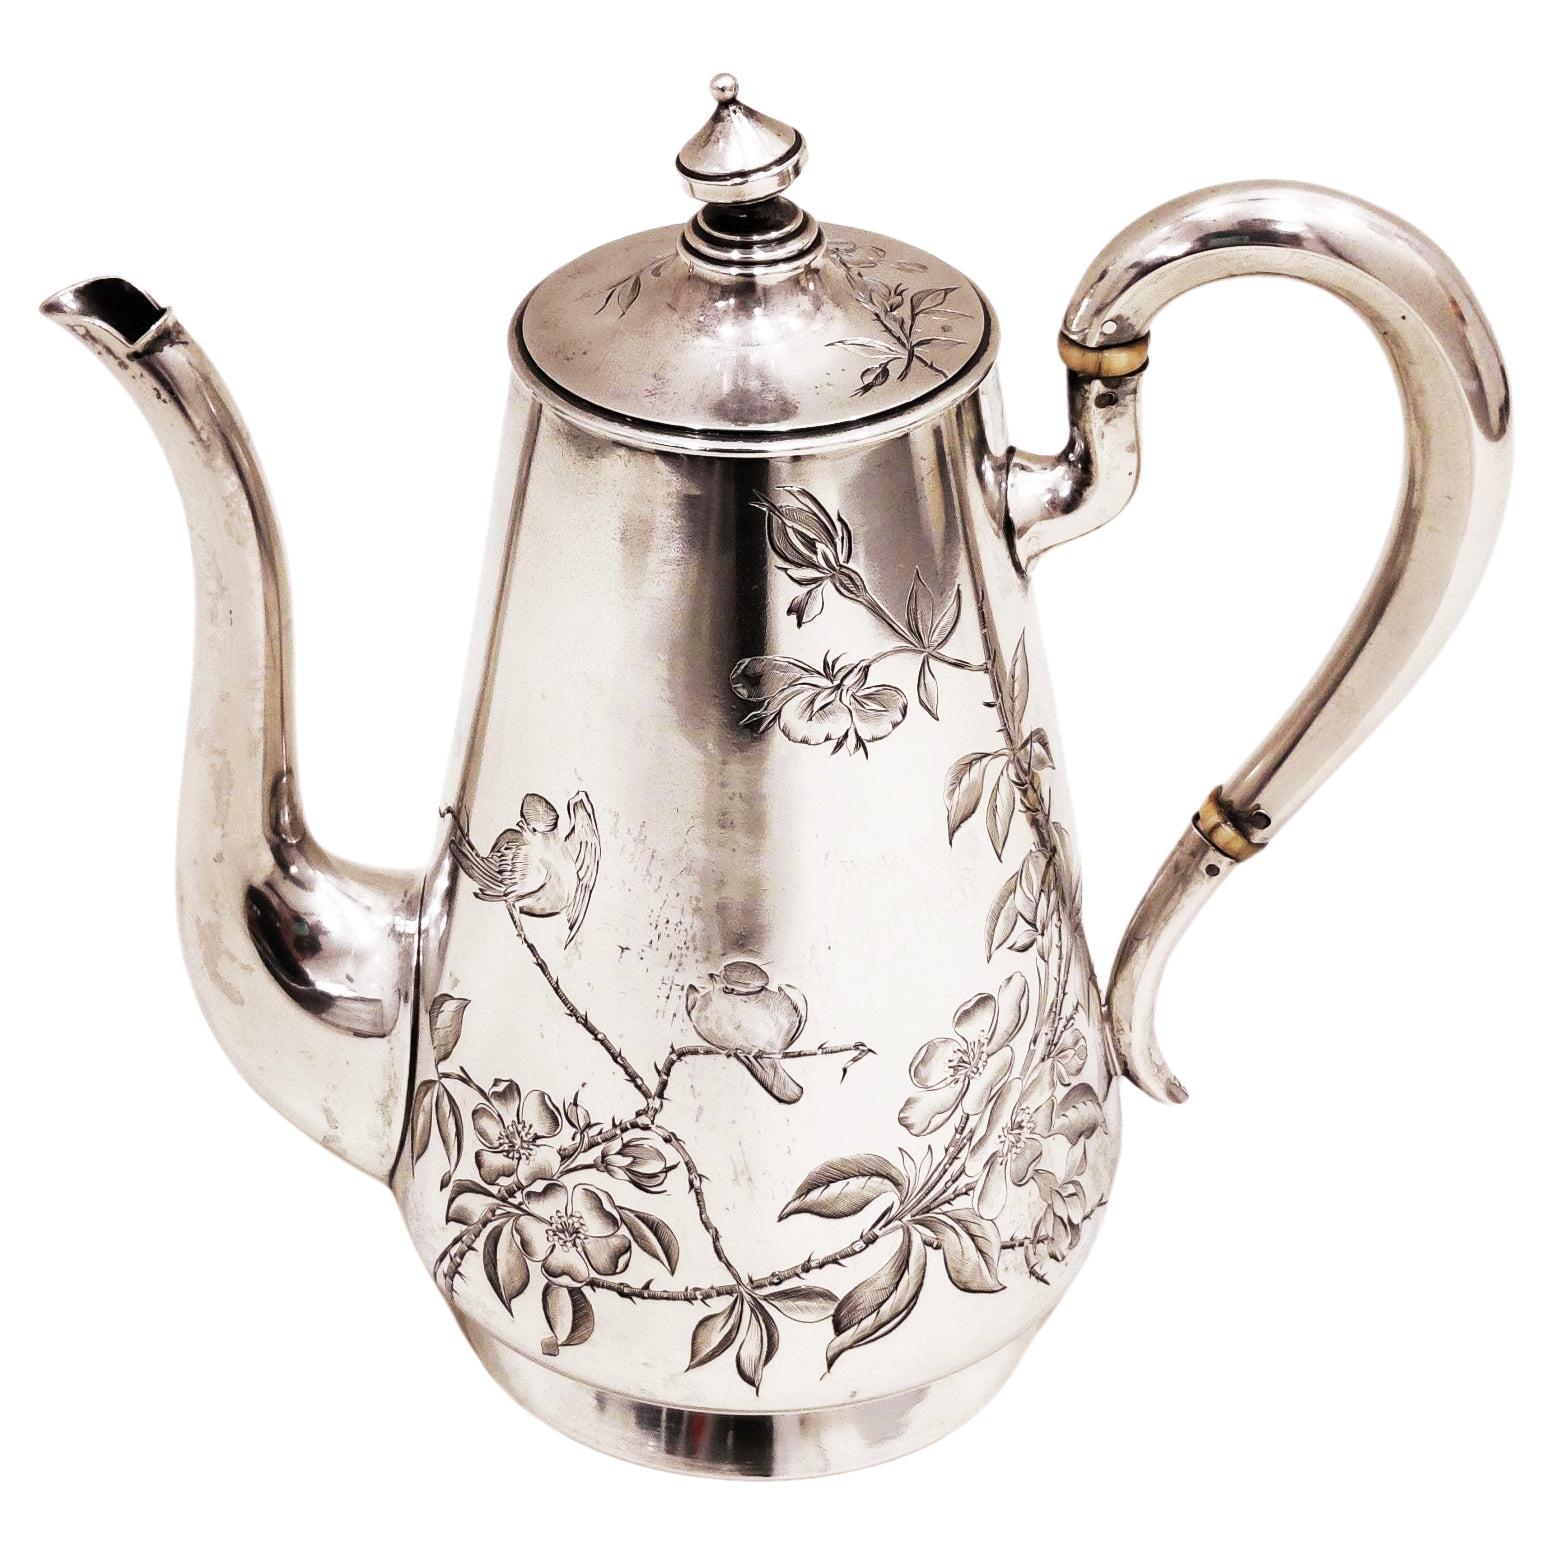 Antike Jugendstil-Teekanne aus massivem 84-Silber aus Silber im russischen Empire-Stil von 1908 - 1917 /587gr